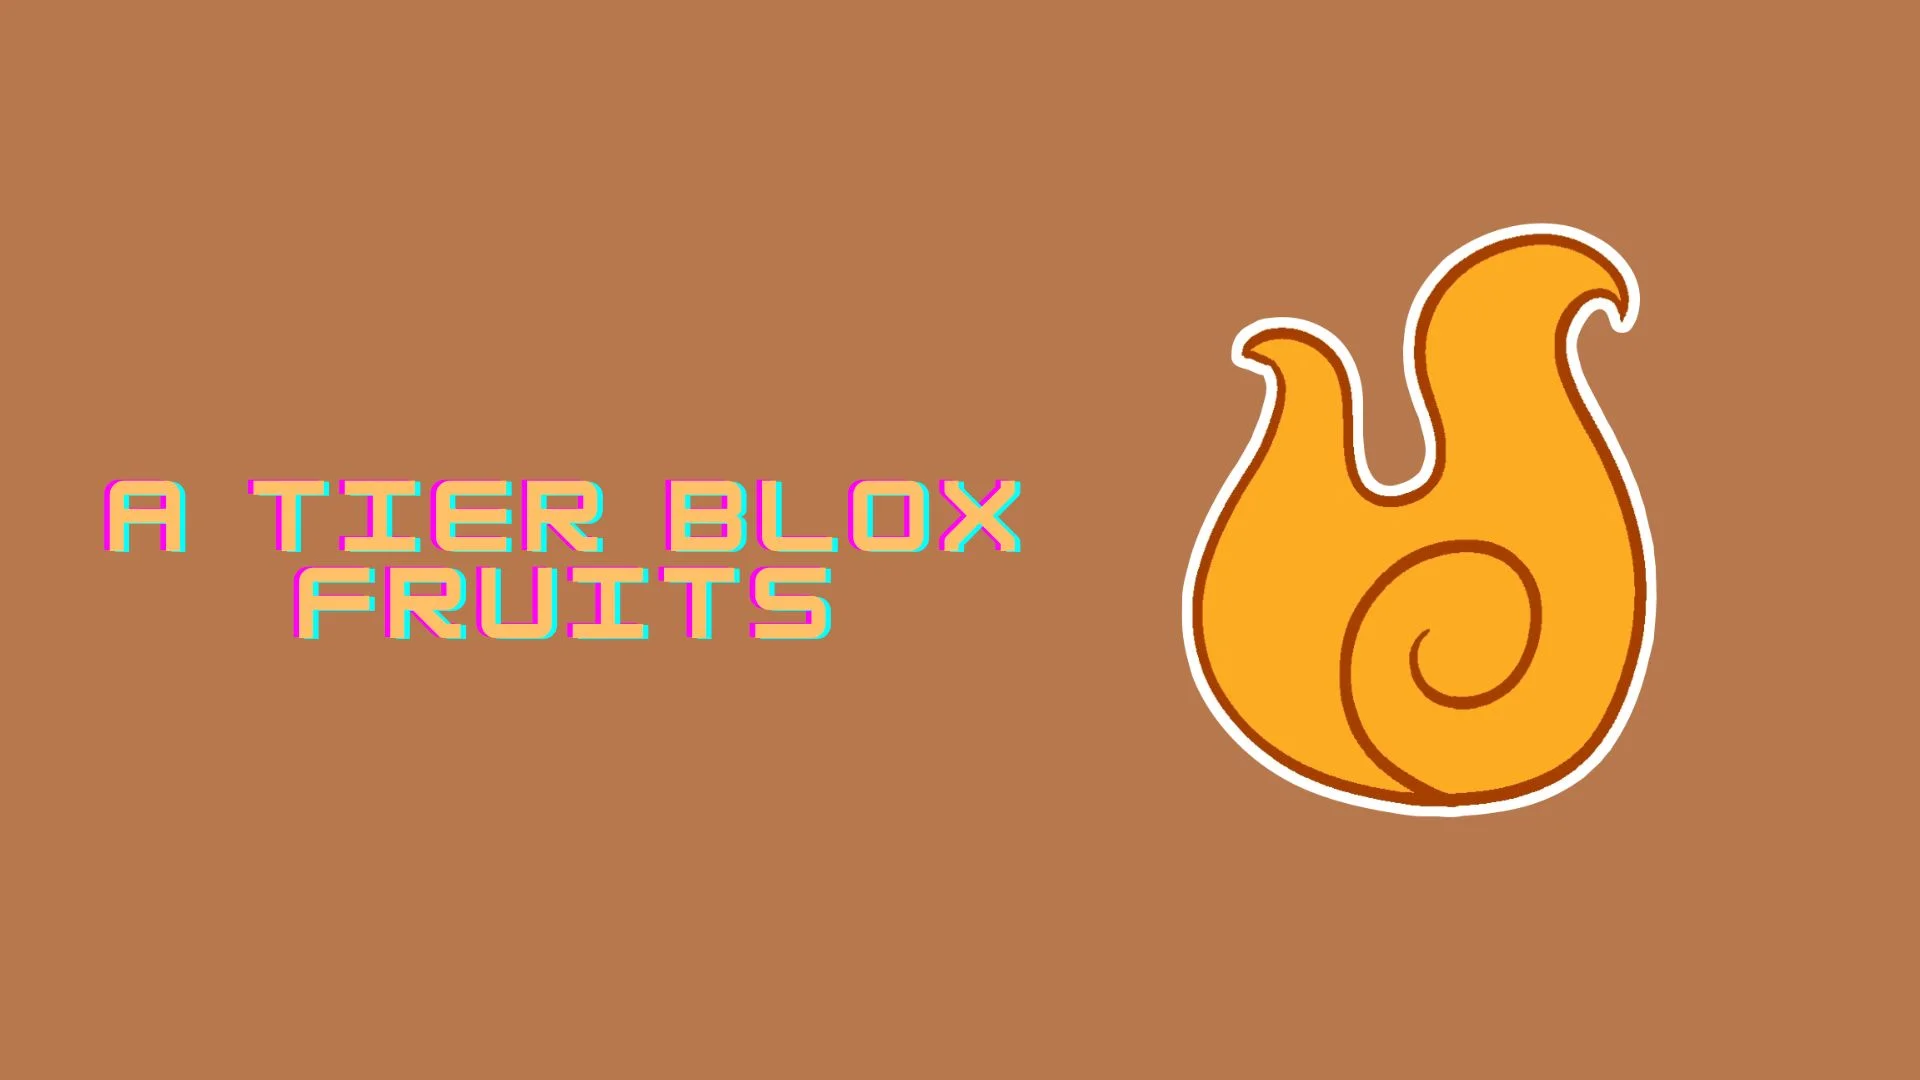 Blox Fruits tier list – best fruits December 2023